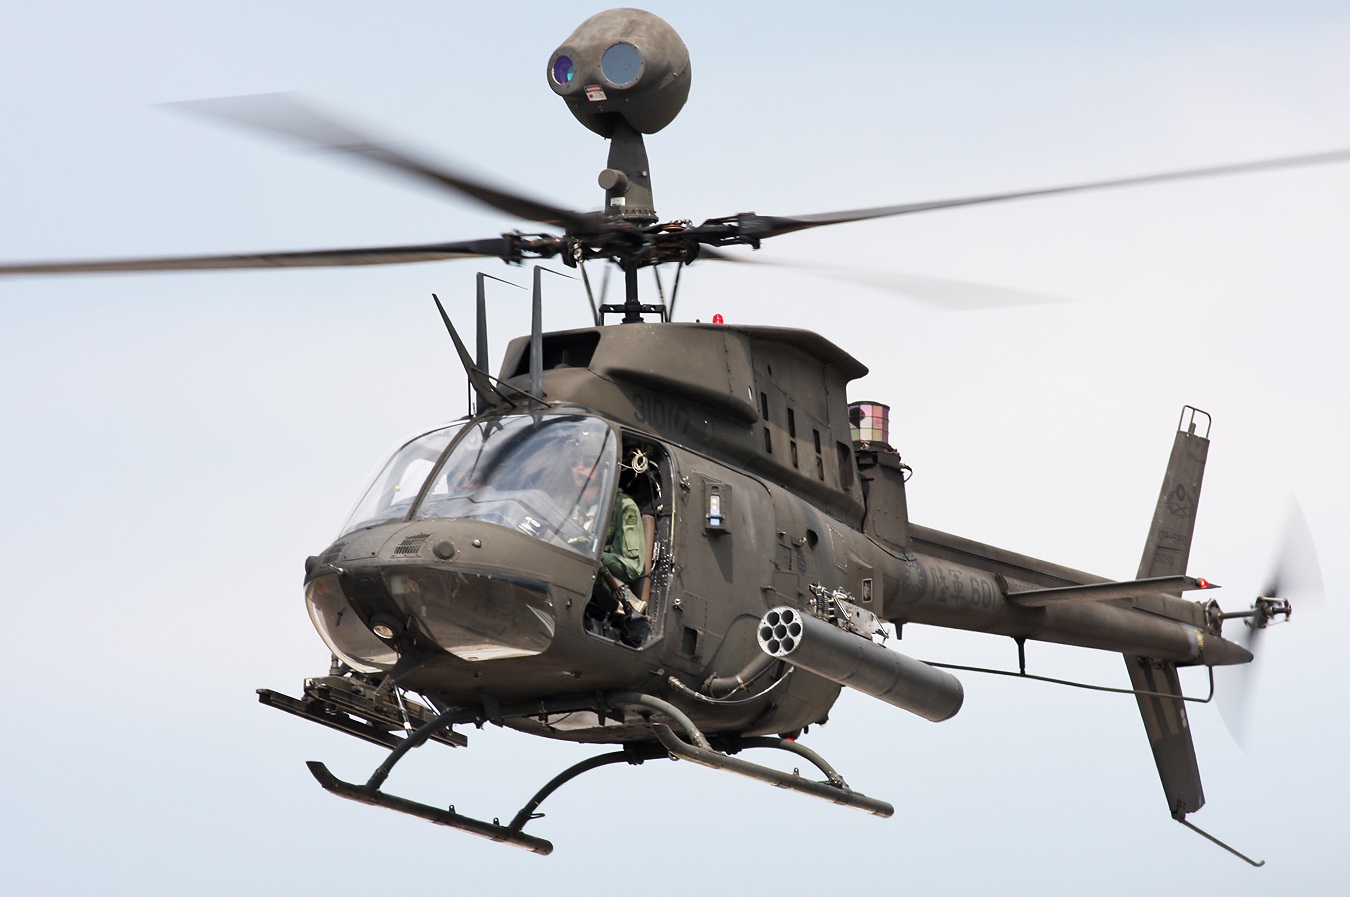 被用来顶替退役的oh-58d基奥瓦勇士轻型侦察直升机来执行武装侦察任务